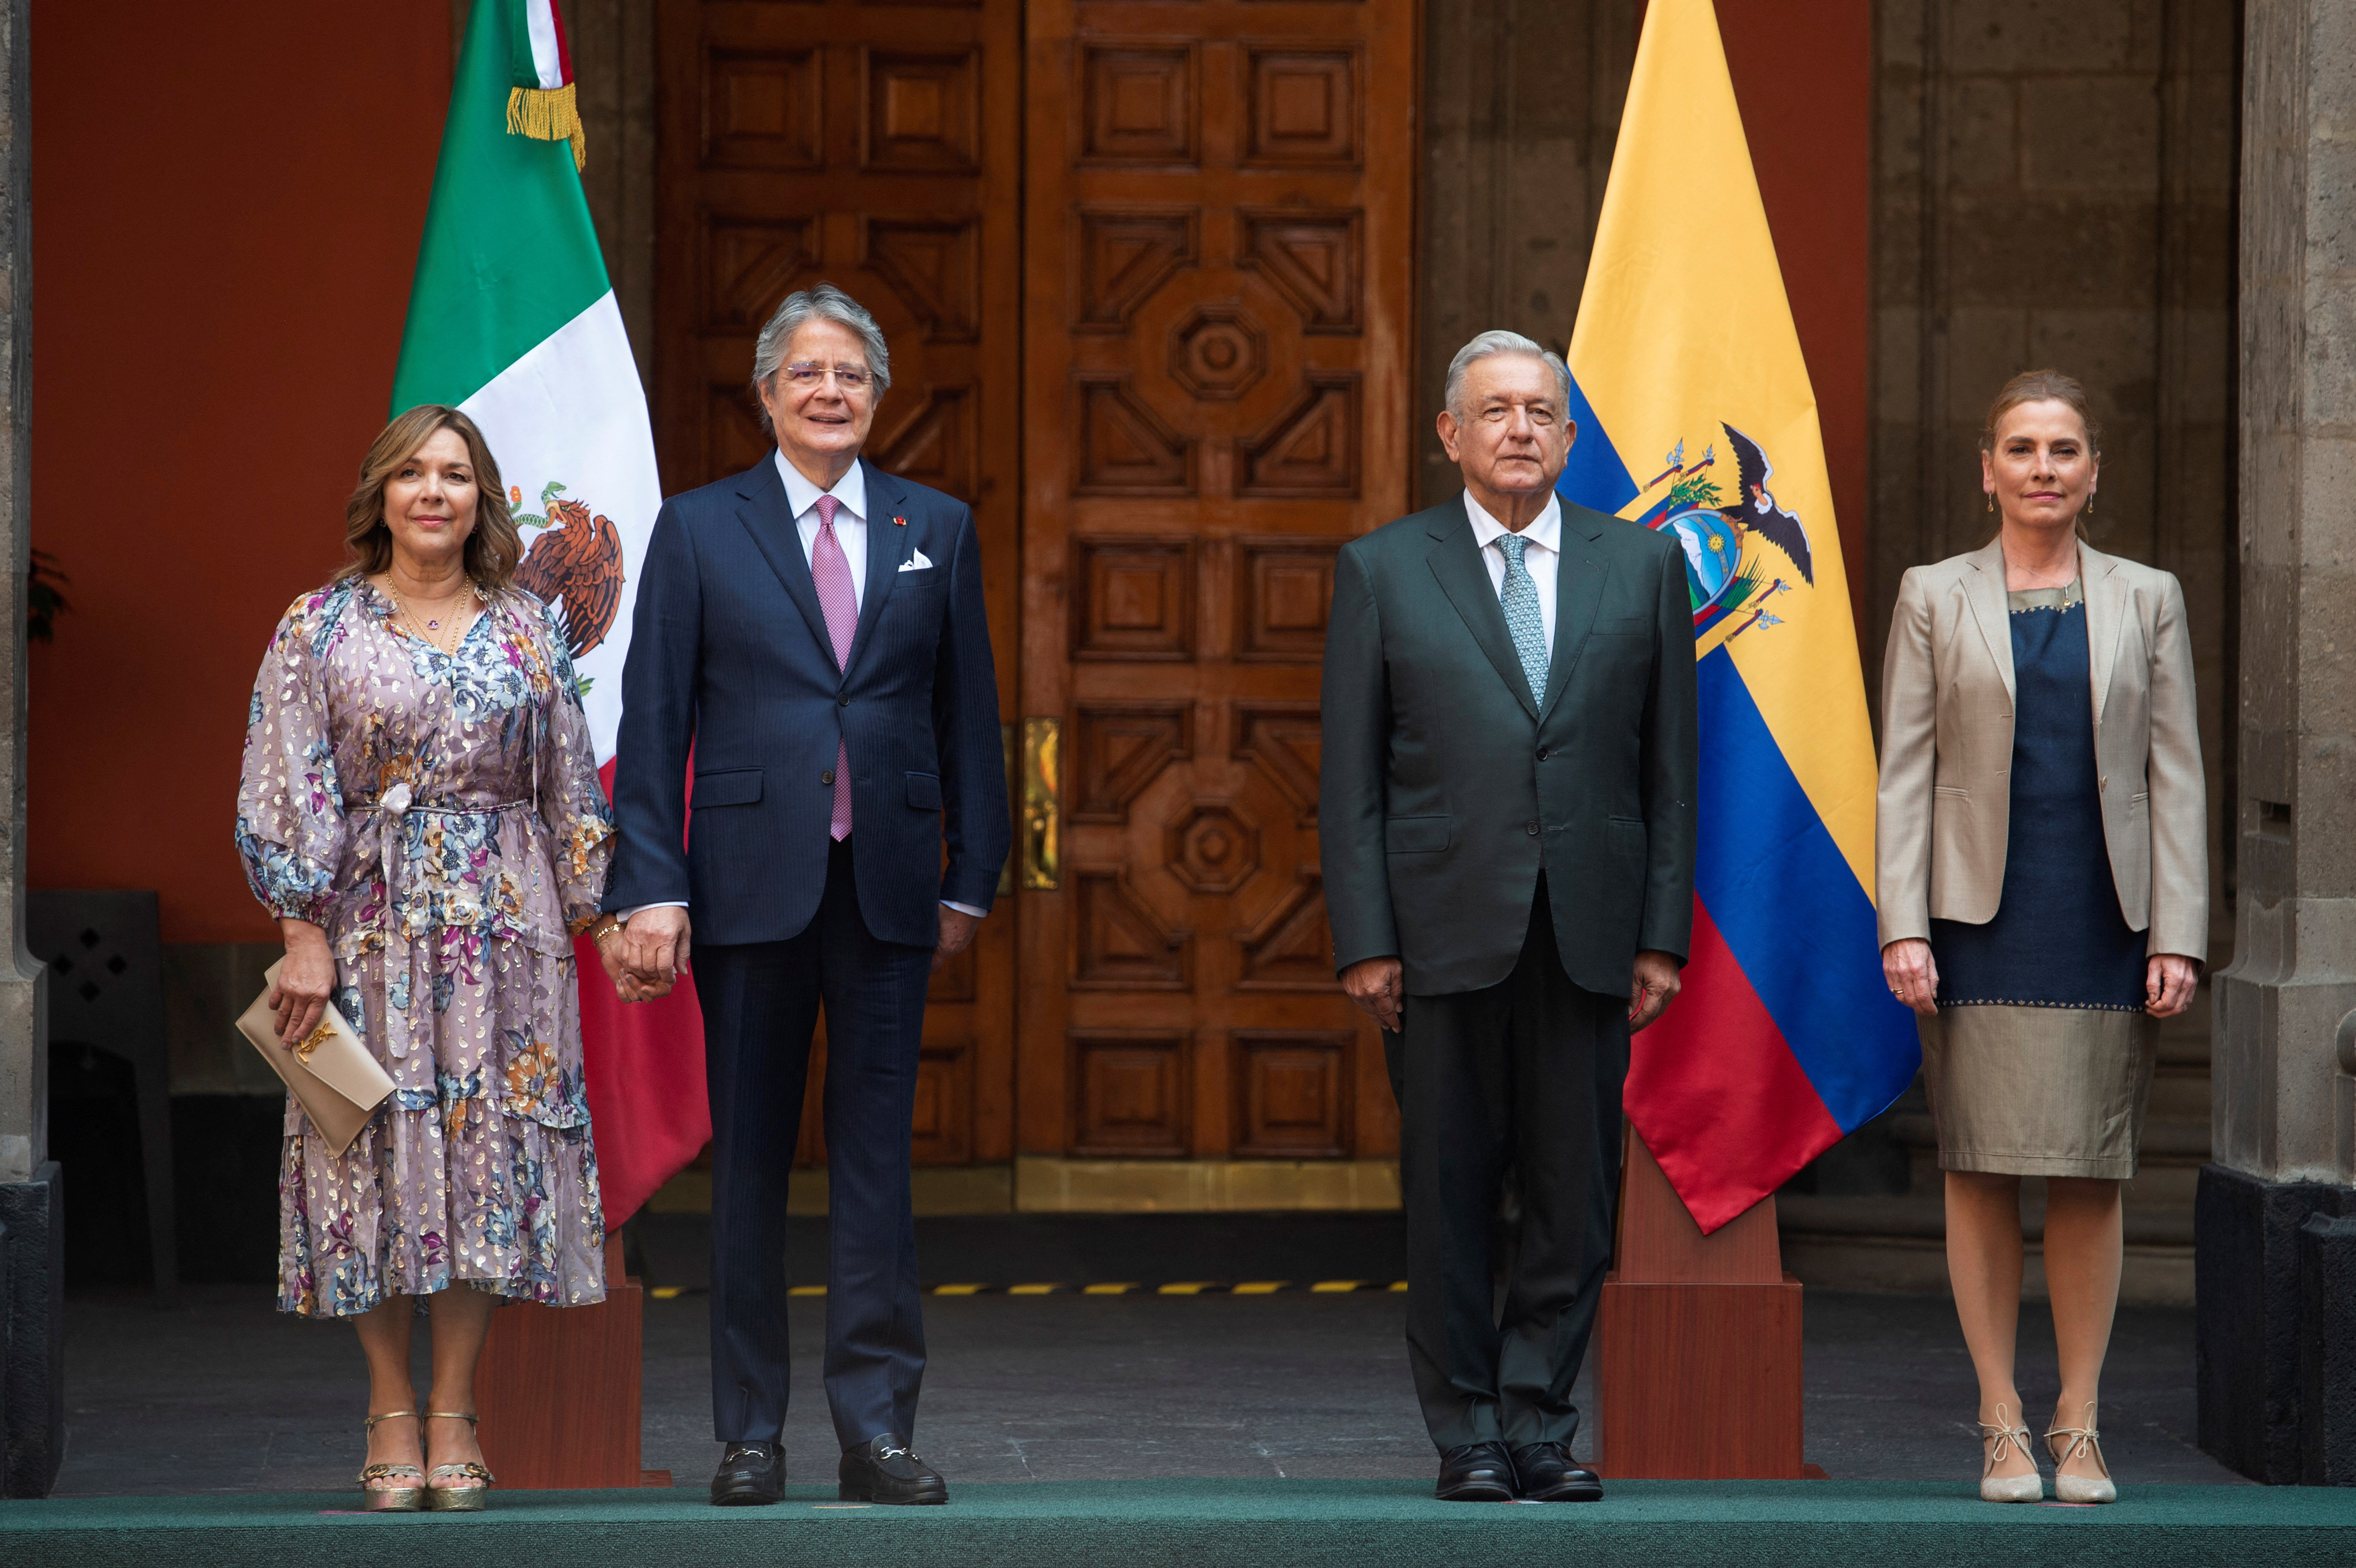 Los presidentes de Ecuador, Guillermo Lasso, y de México, Andrés Manuel López Obrador, dispusieron a sus equipos encontrar un equilibrio para firmar un tratado de libre comercio, pero las negociaciones se detuvieron. (Presidencia de México)